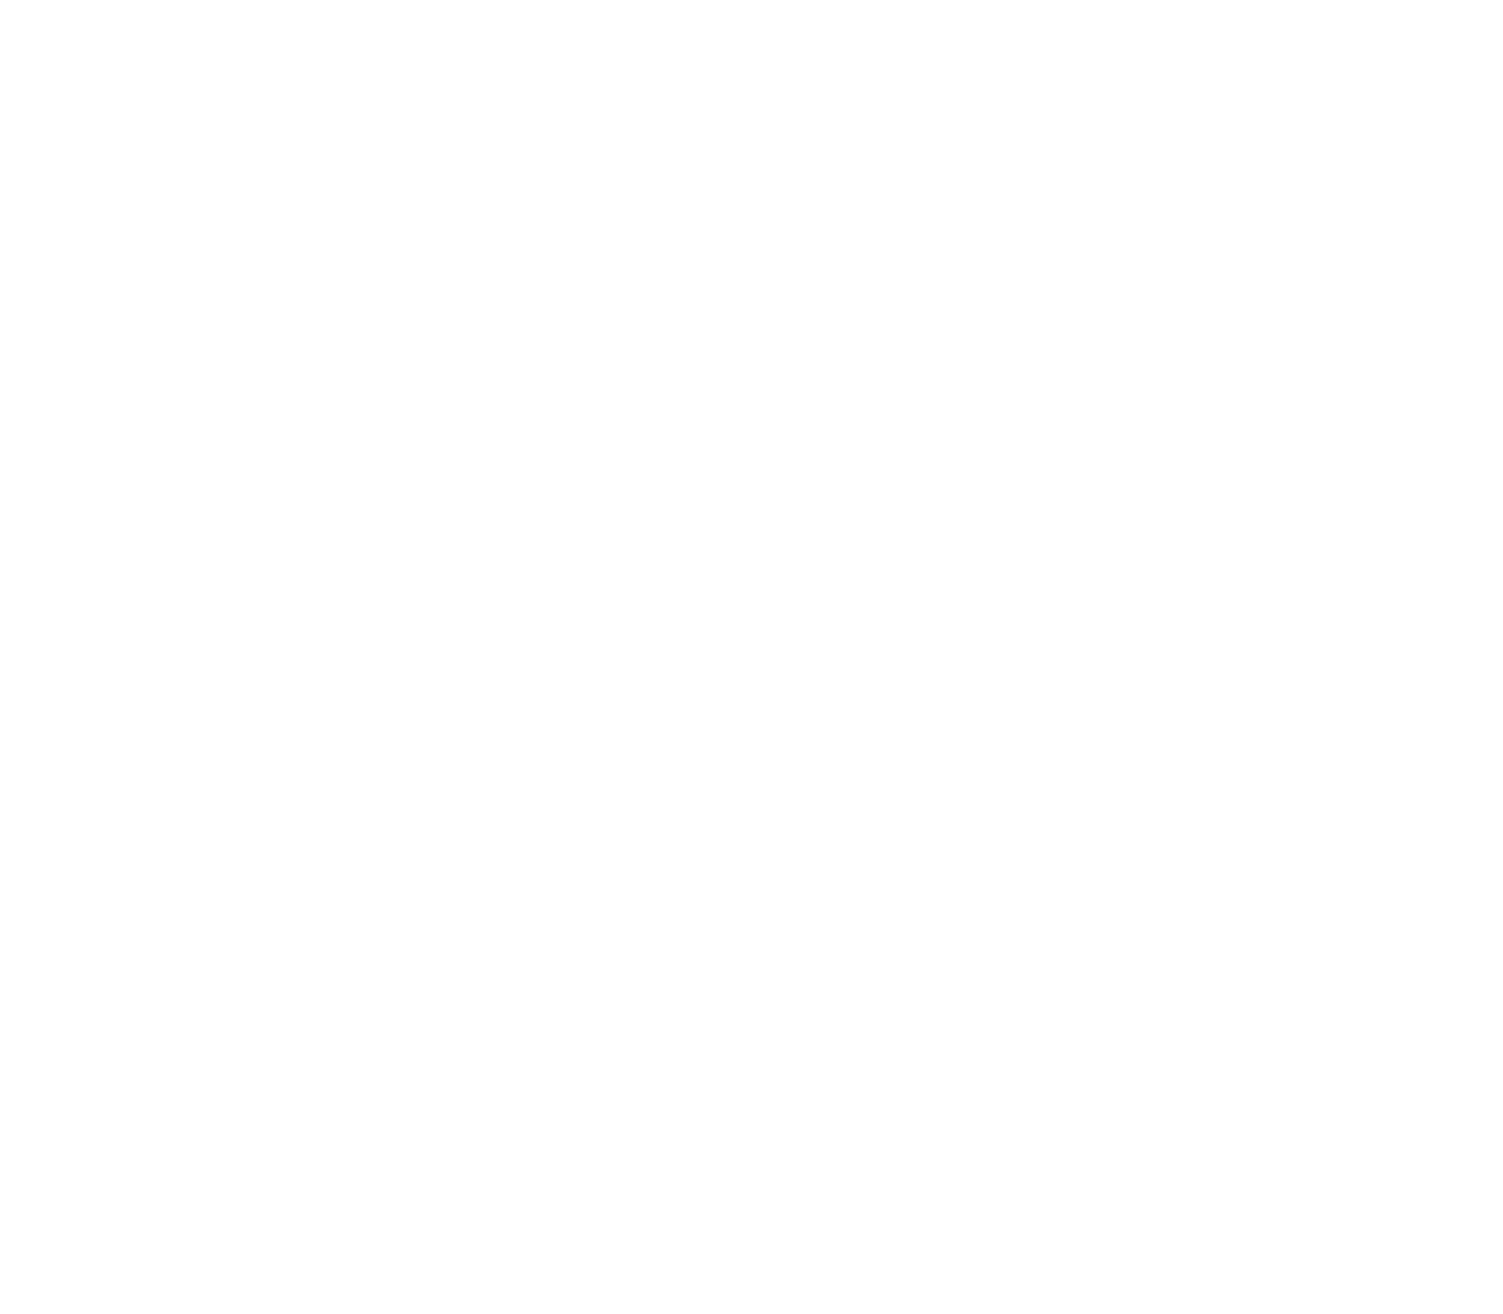 Fastighets AB Balder logo for dark backgrounds (transparent PNG)